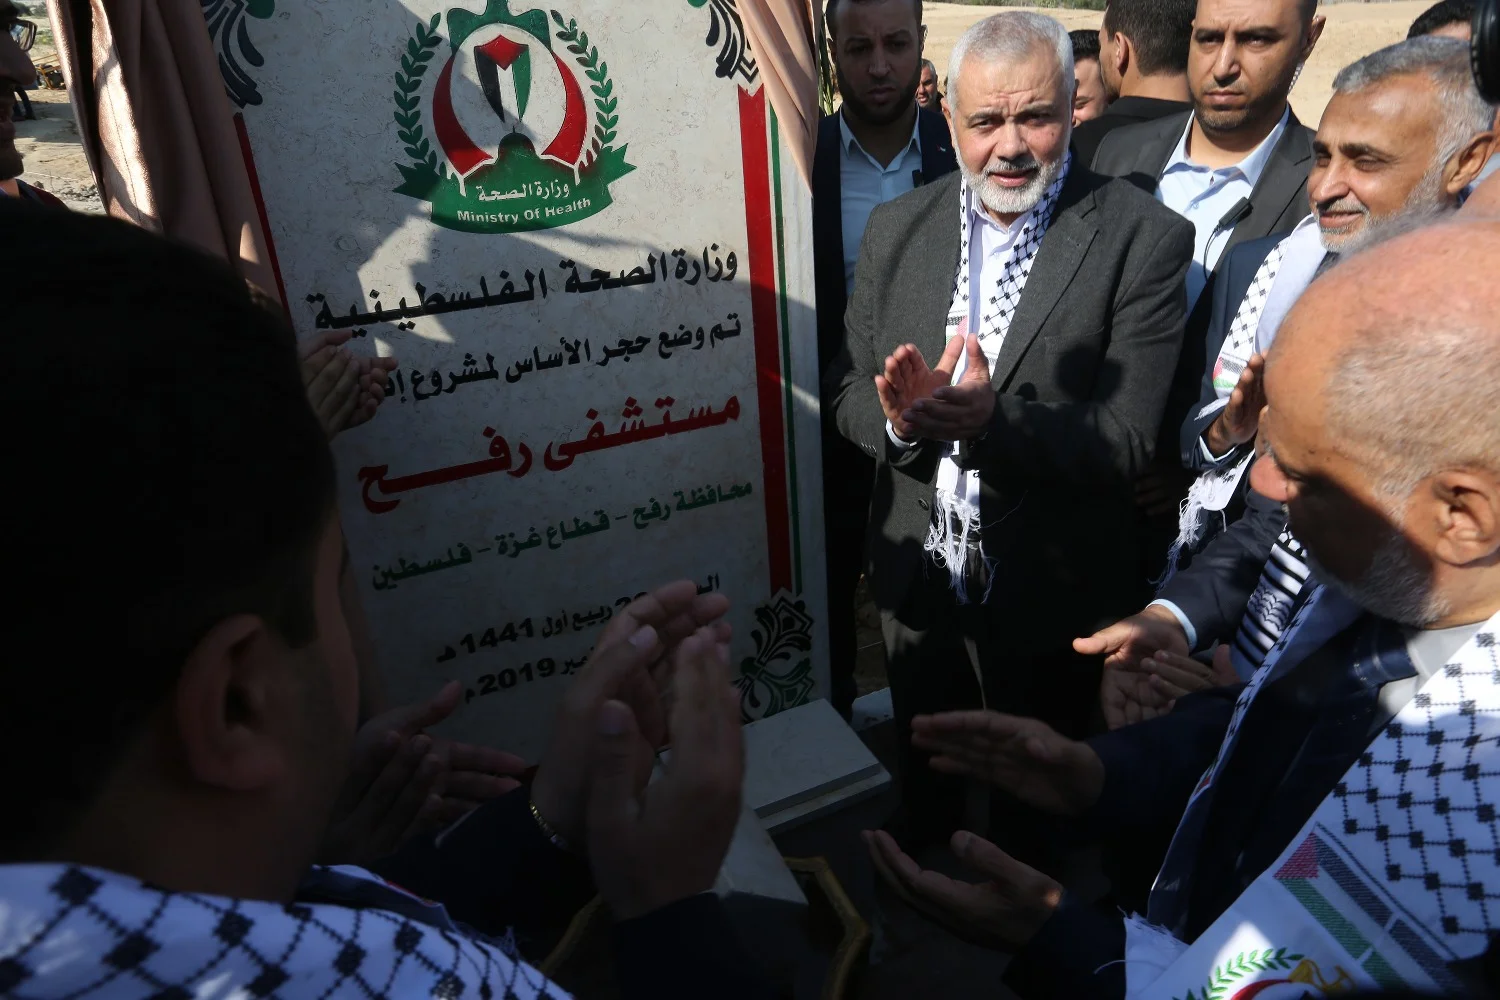 Hamas' ideeën na de bevrijding van Palestina: Joden zullen mogen vertrekken, maar niet allemaal